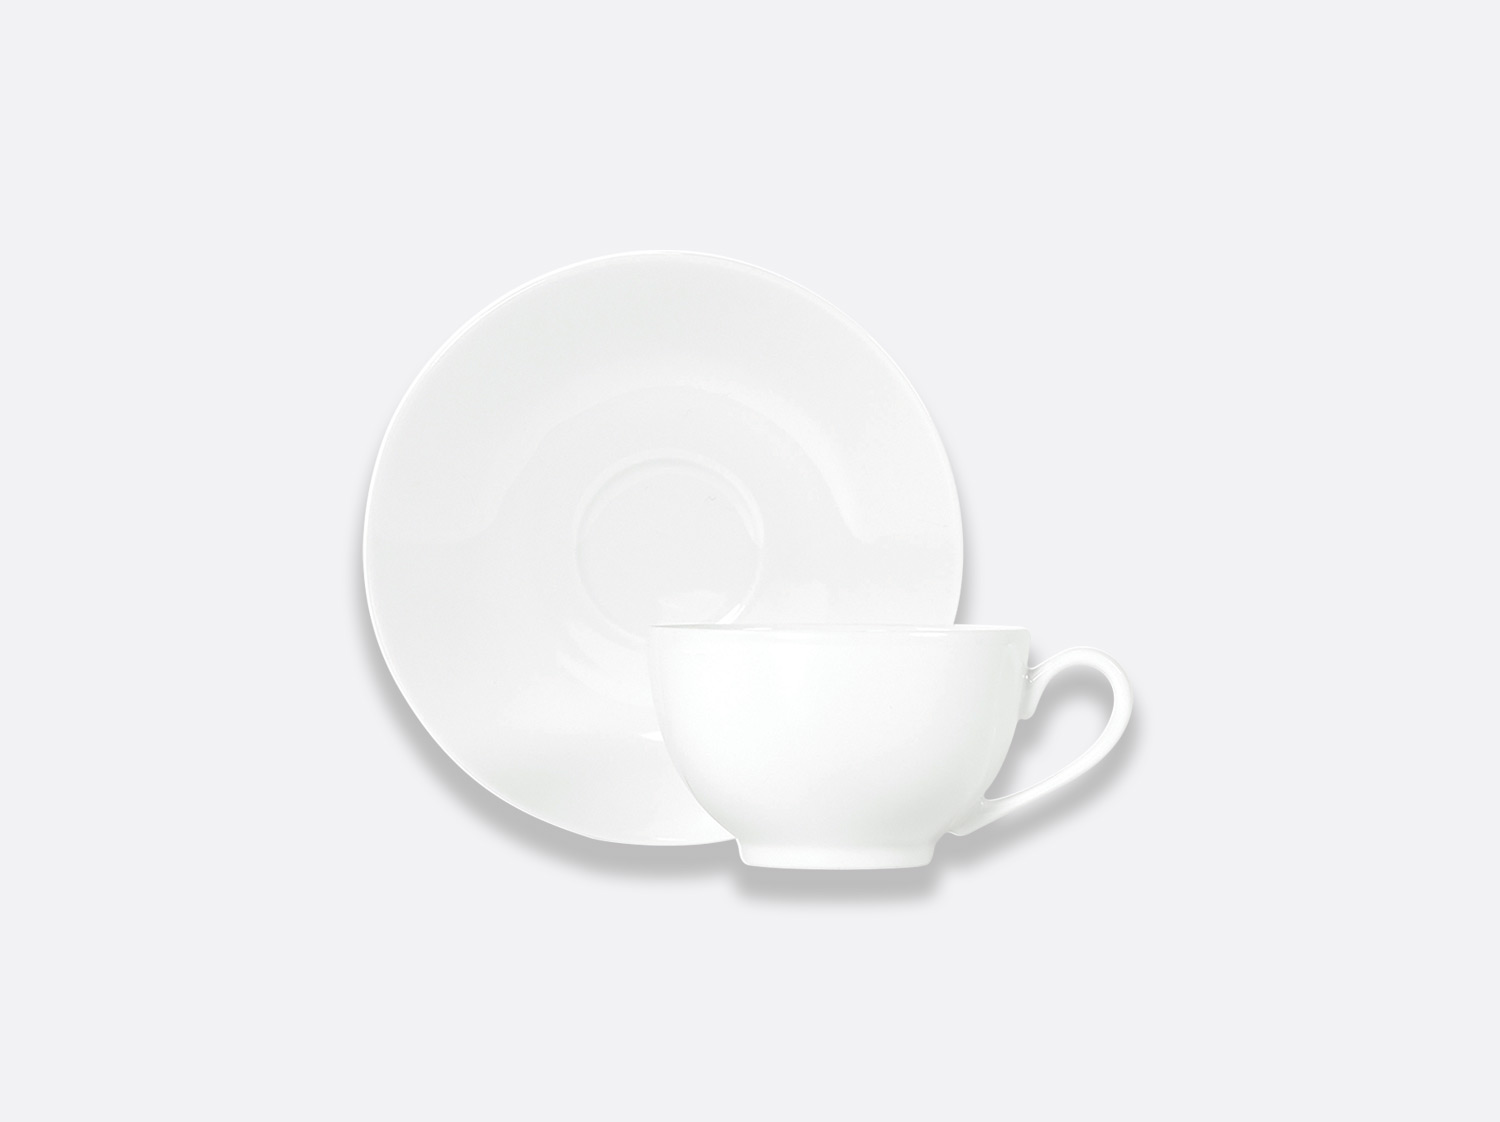 China Boule teacup and saucer 4.4 oz of the collection Boule blanc | Bernardaud